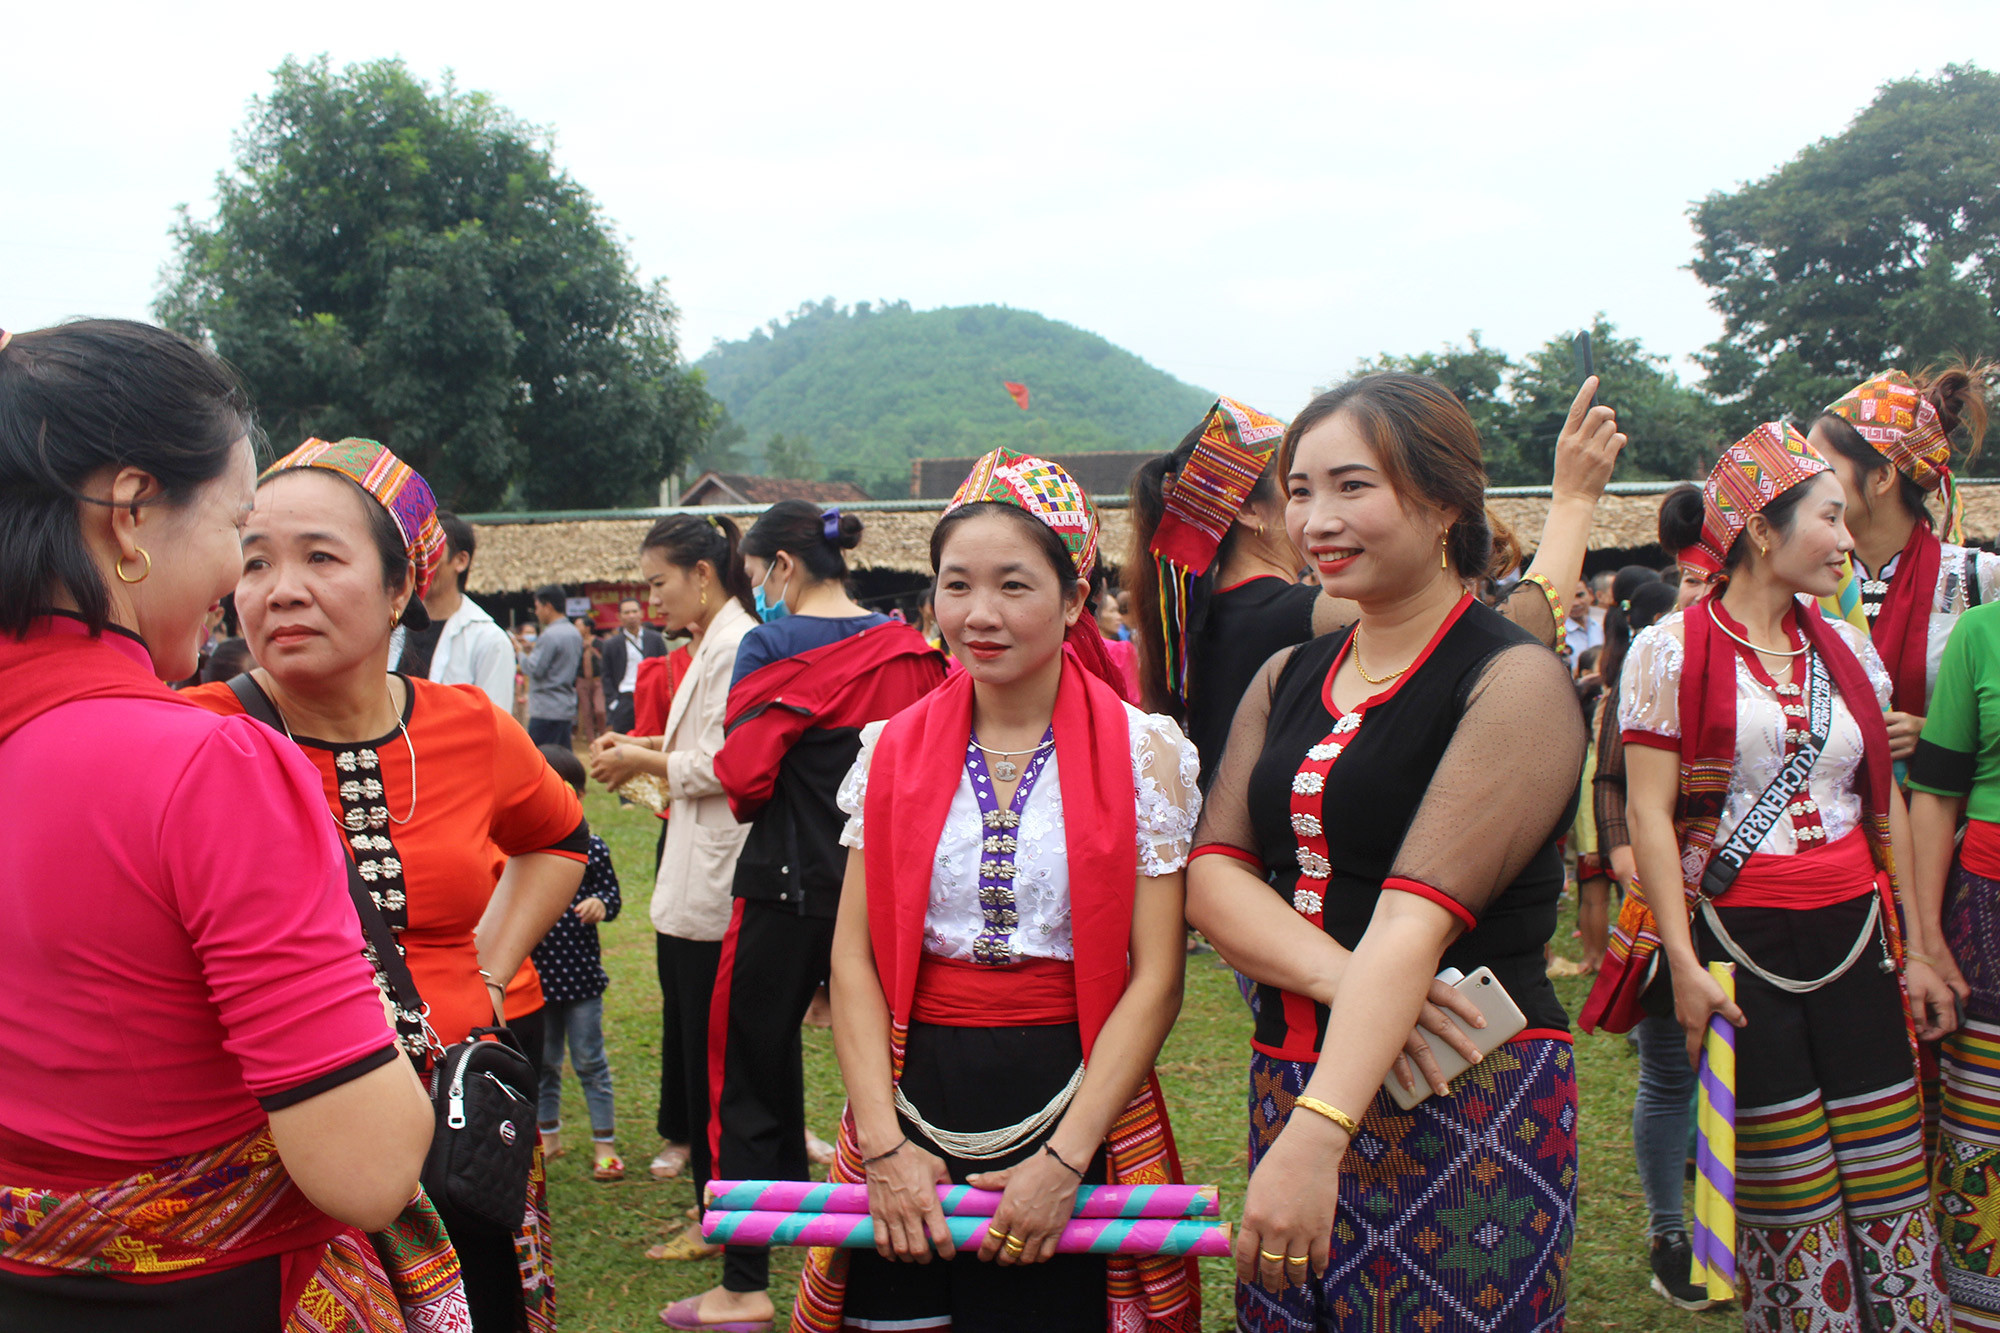 Ngay từ sáng sơm nhiều chị em người Thái trong những bộ váy Thái đã được chuẩn bị sắn để tham gia hội chợ. Ảnh: Bá Hậu